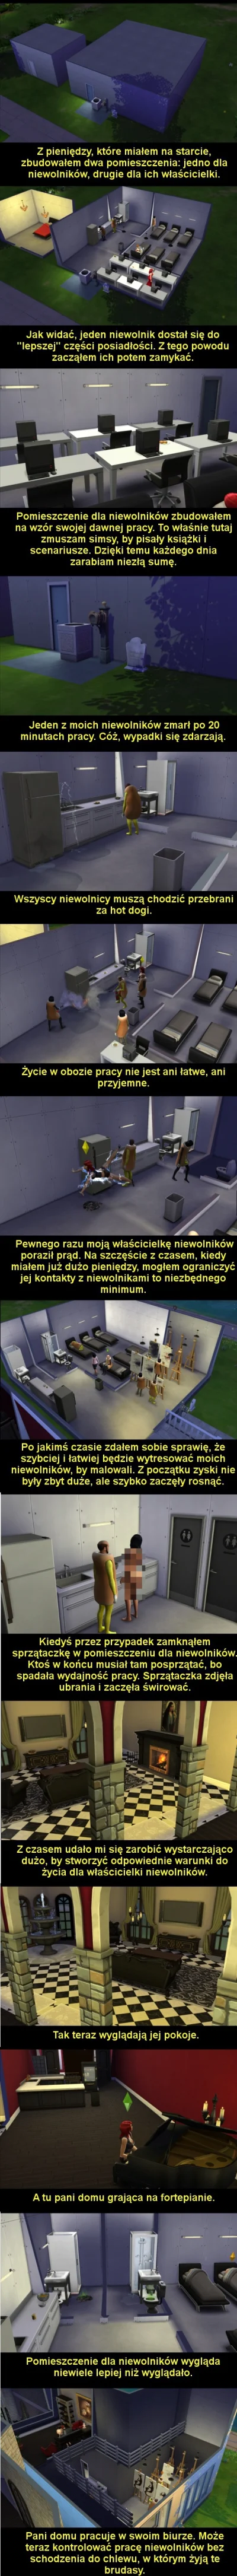 M.....a - Obóz pracy w Simsach XD

#simsy #humorobrazkowy #heheszki #korposwiat